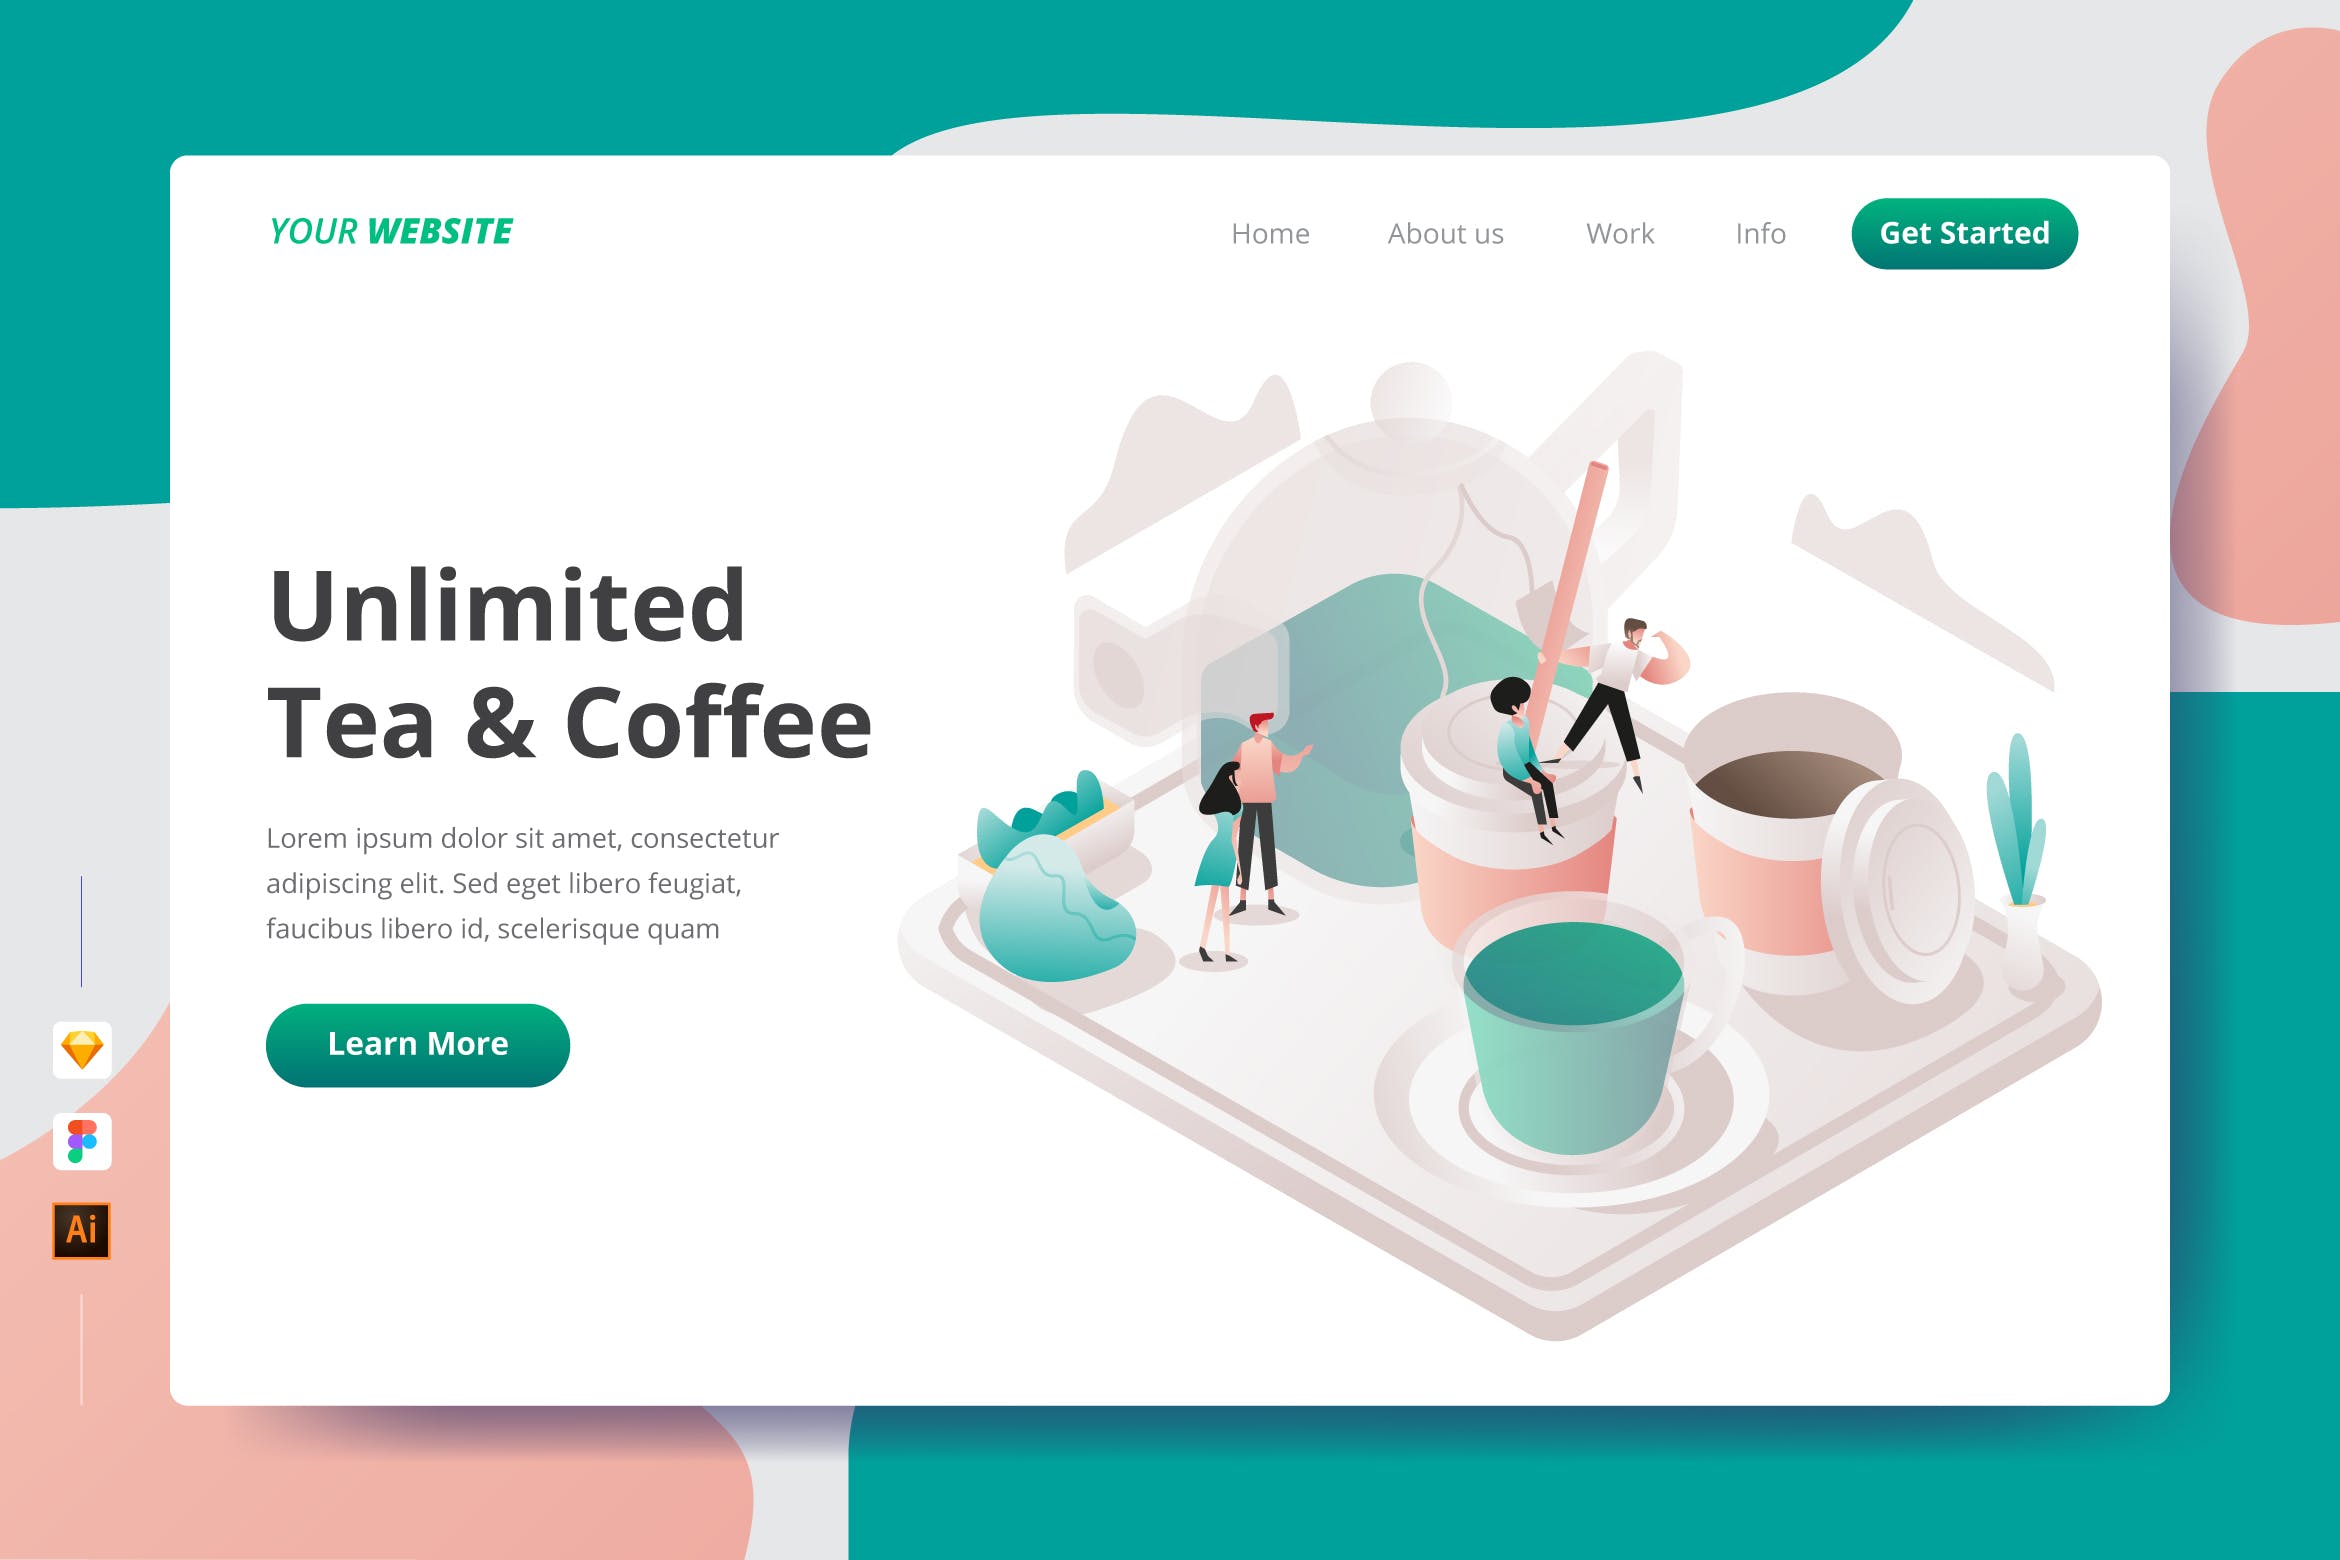 咖啡&饮茶文化主题插画网站着陆页设计16图库精选模板 Unlimited Tea & Coffee – Landing Page插图